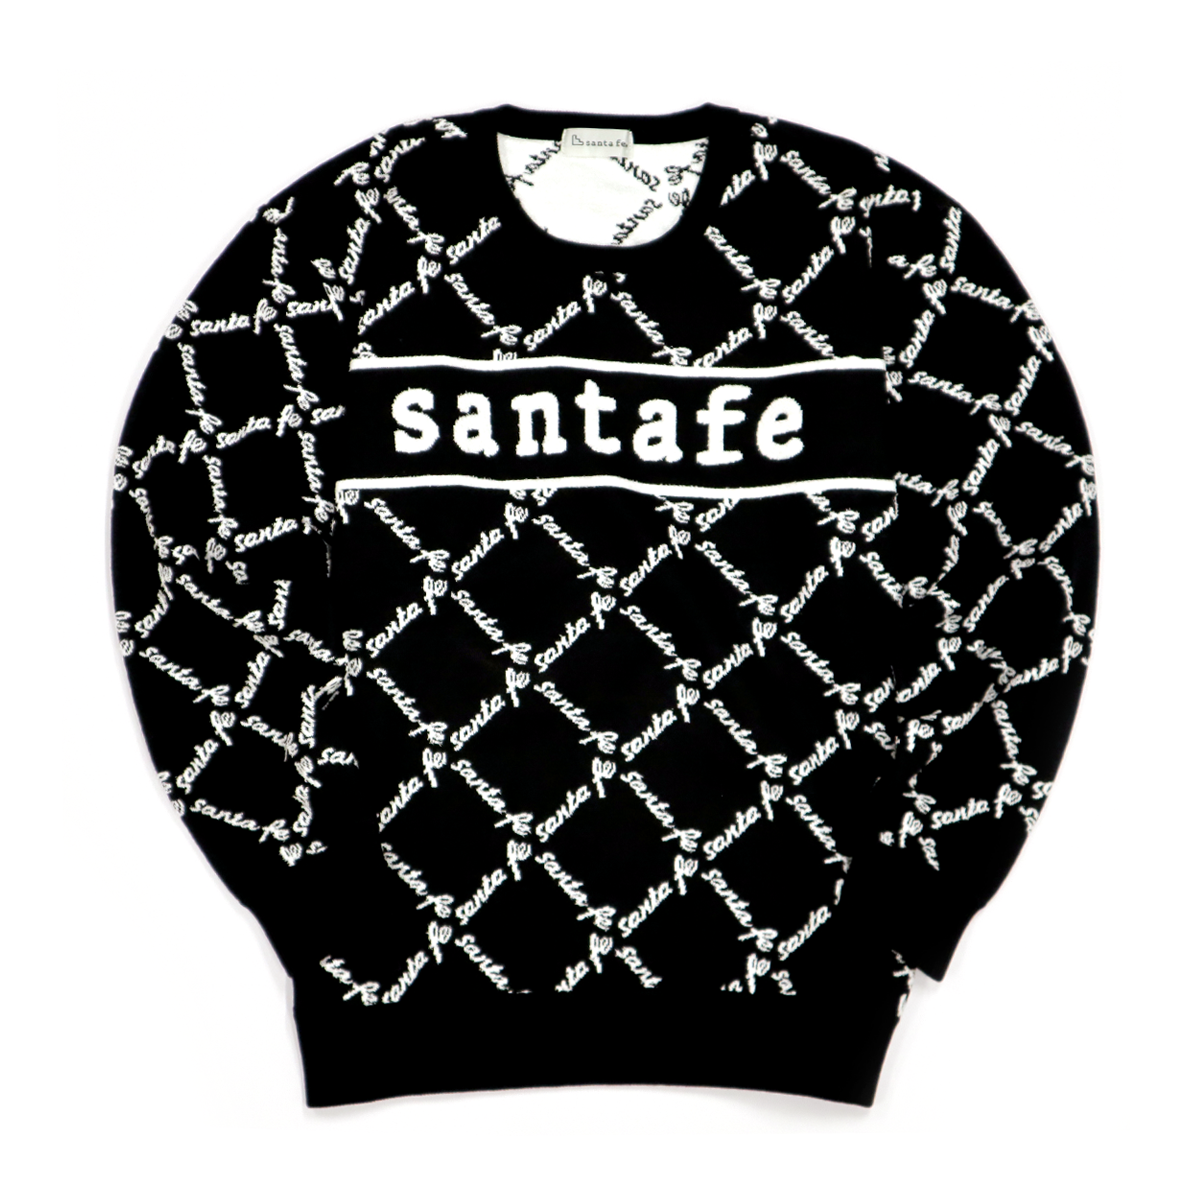 santafe full logo knit